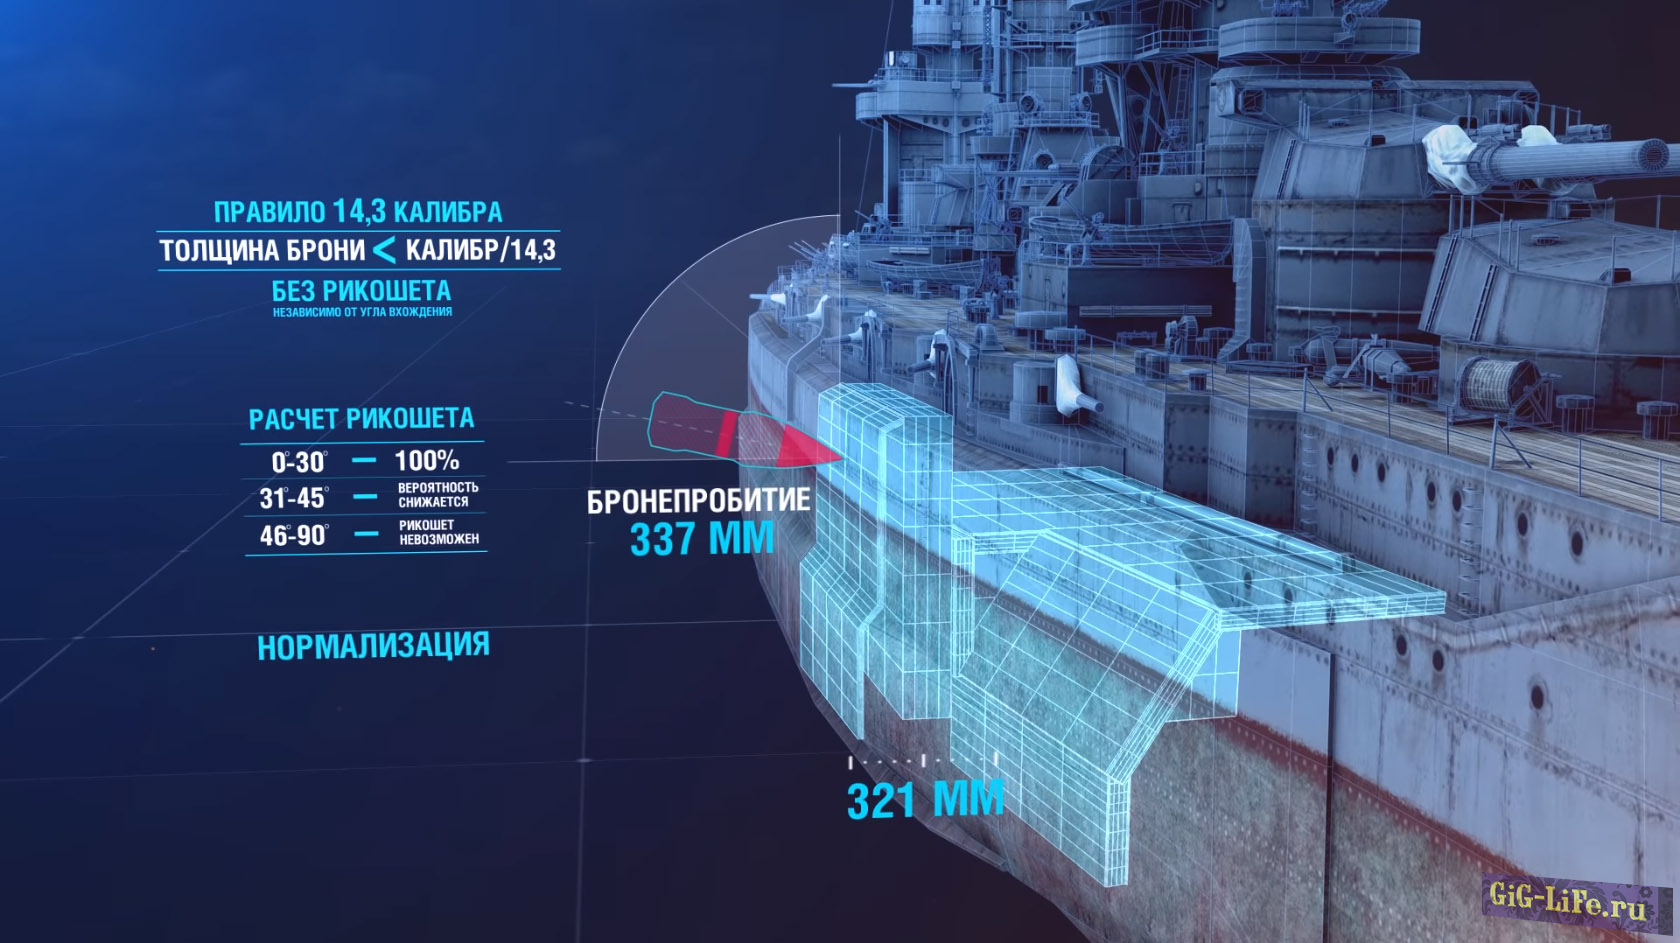 World of Warships - как это работает: бронирование